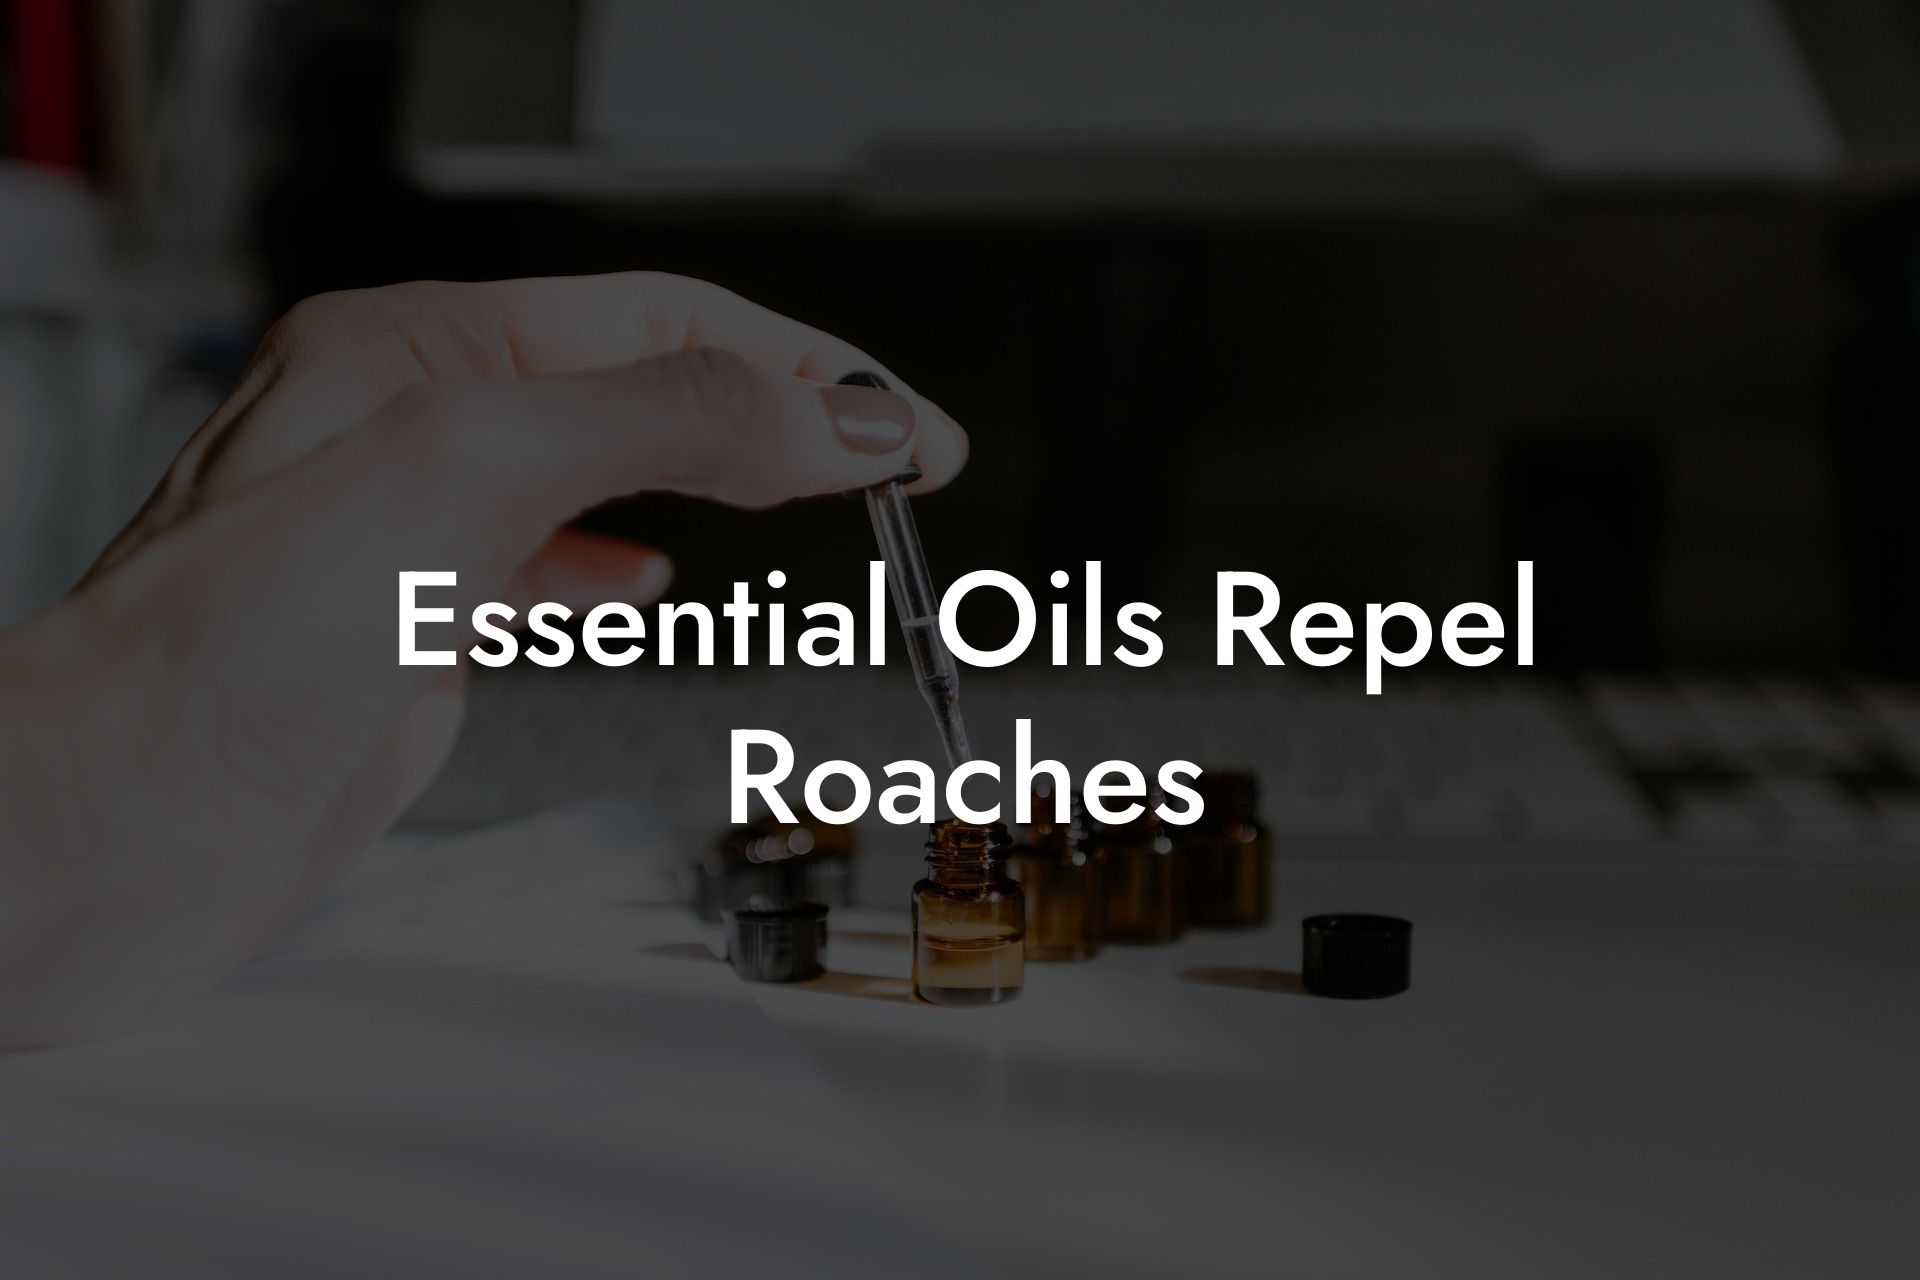 Essential Oils Repel Roaches